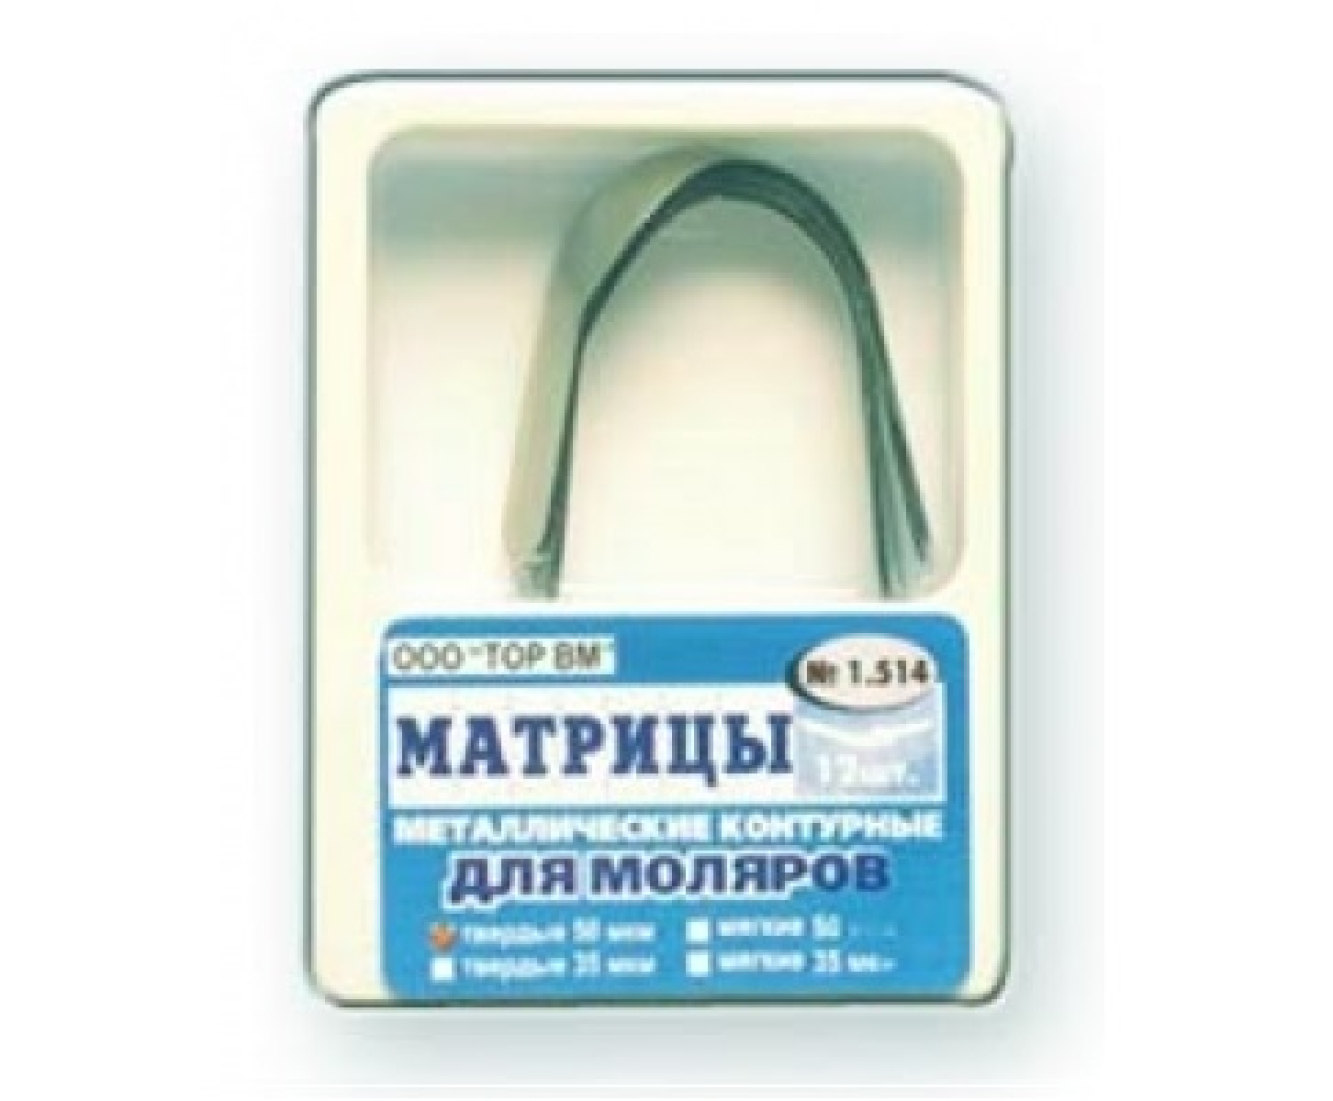 Матрицы металлические контурные, для моляров формы 4, ТОР ВМ (Россия)